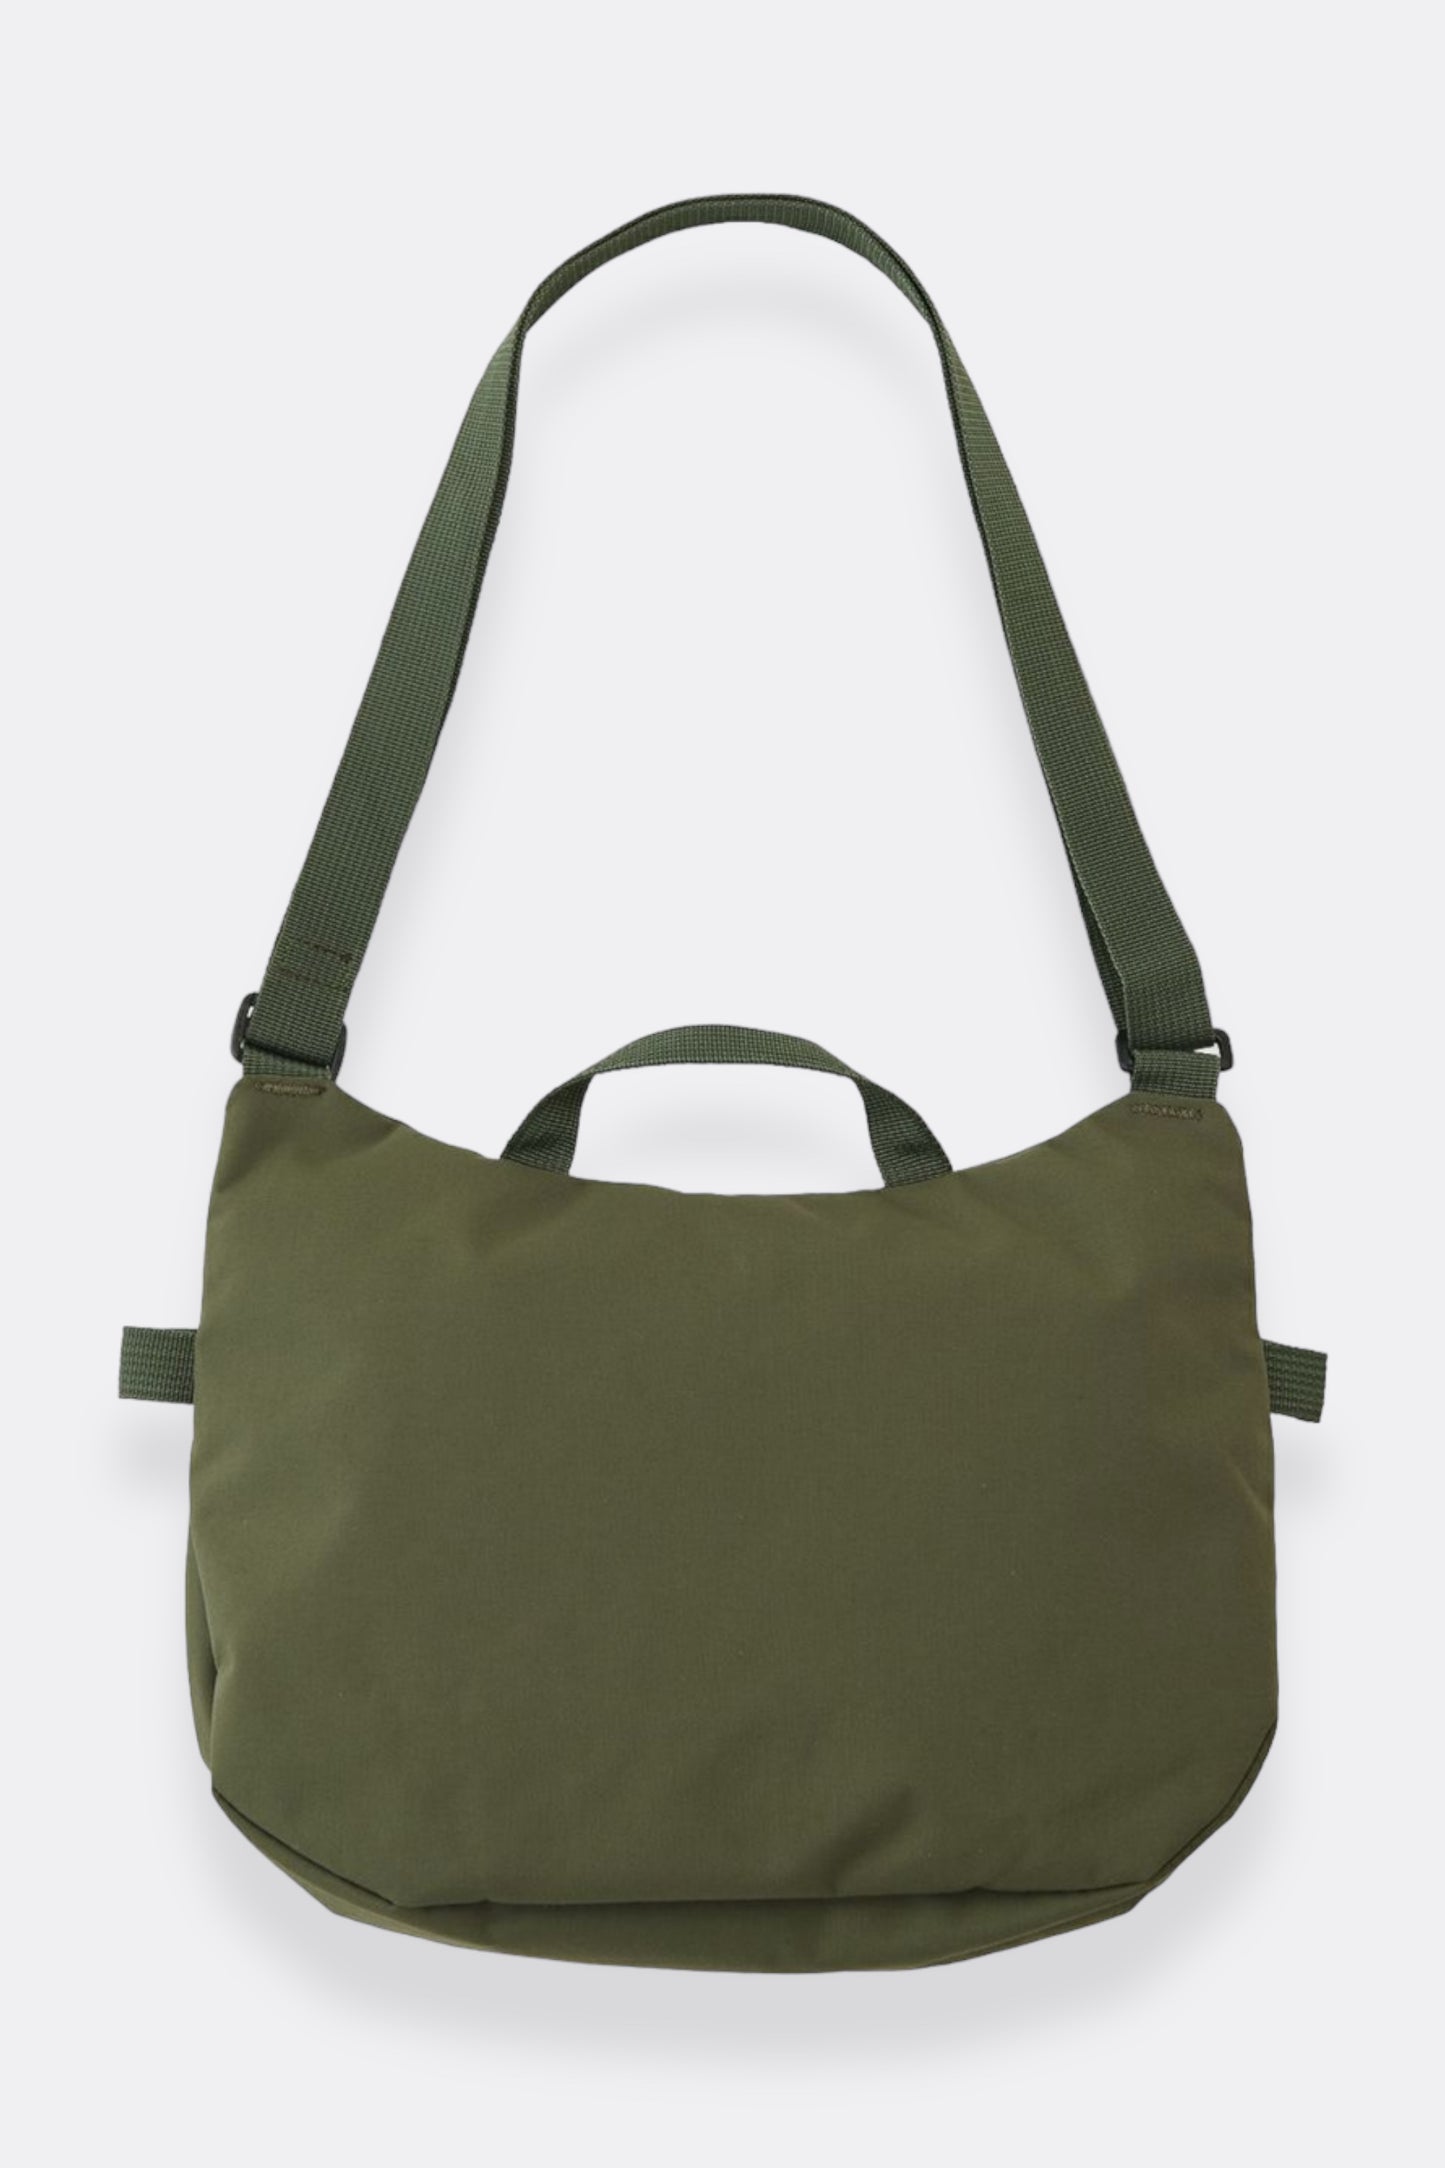 Gramicci - Cordura Shoulder Bag (Navy)